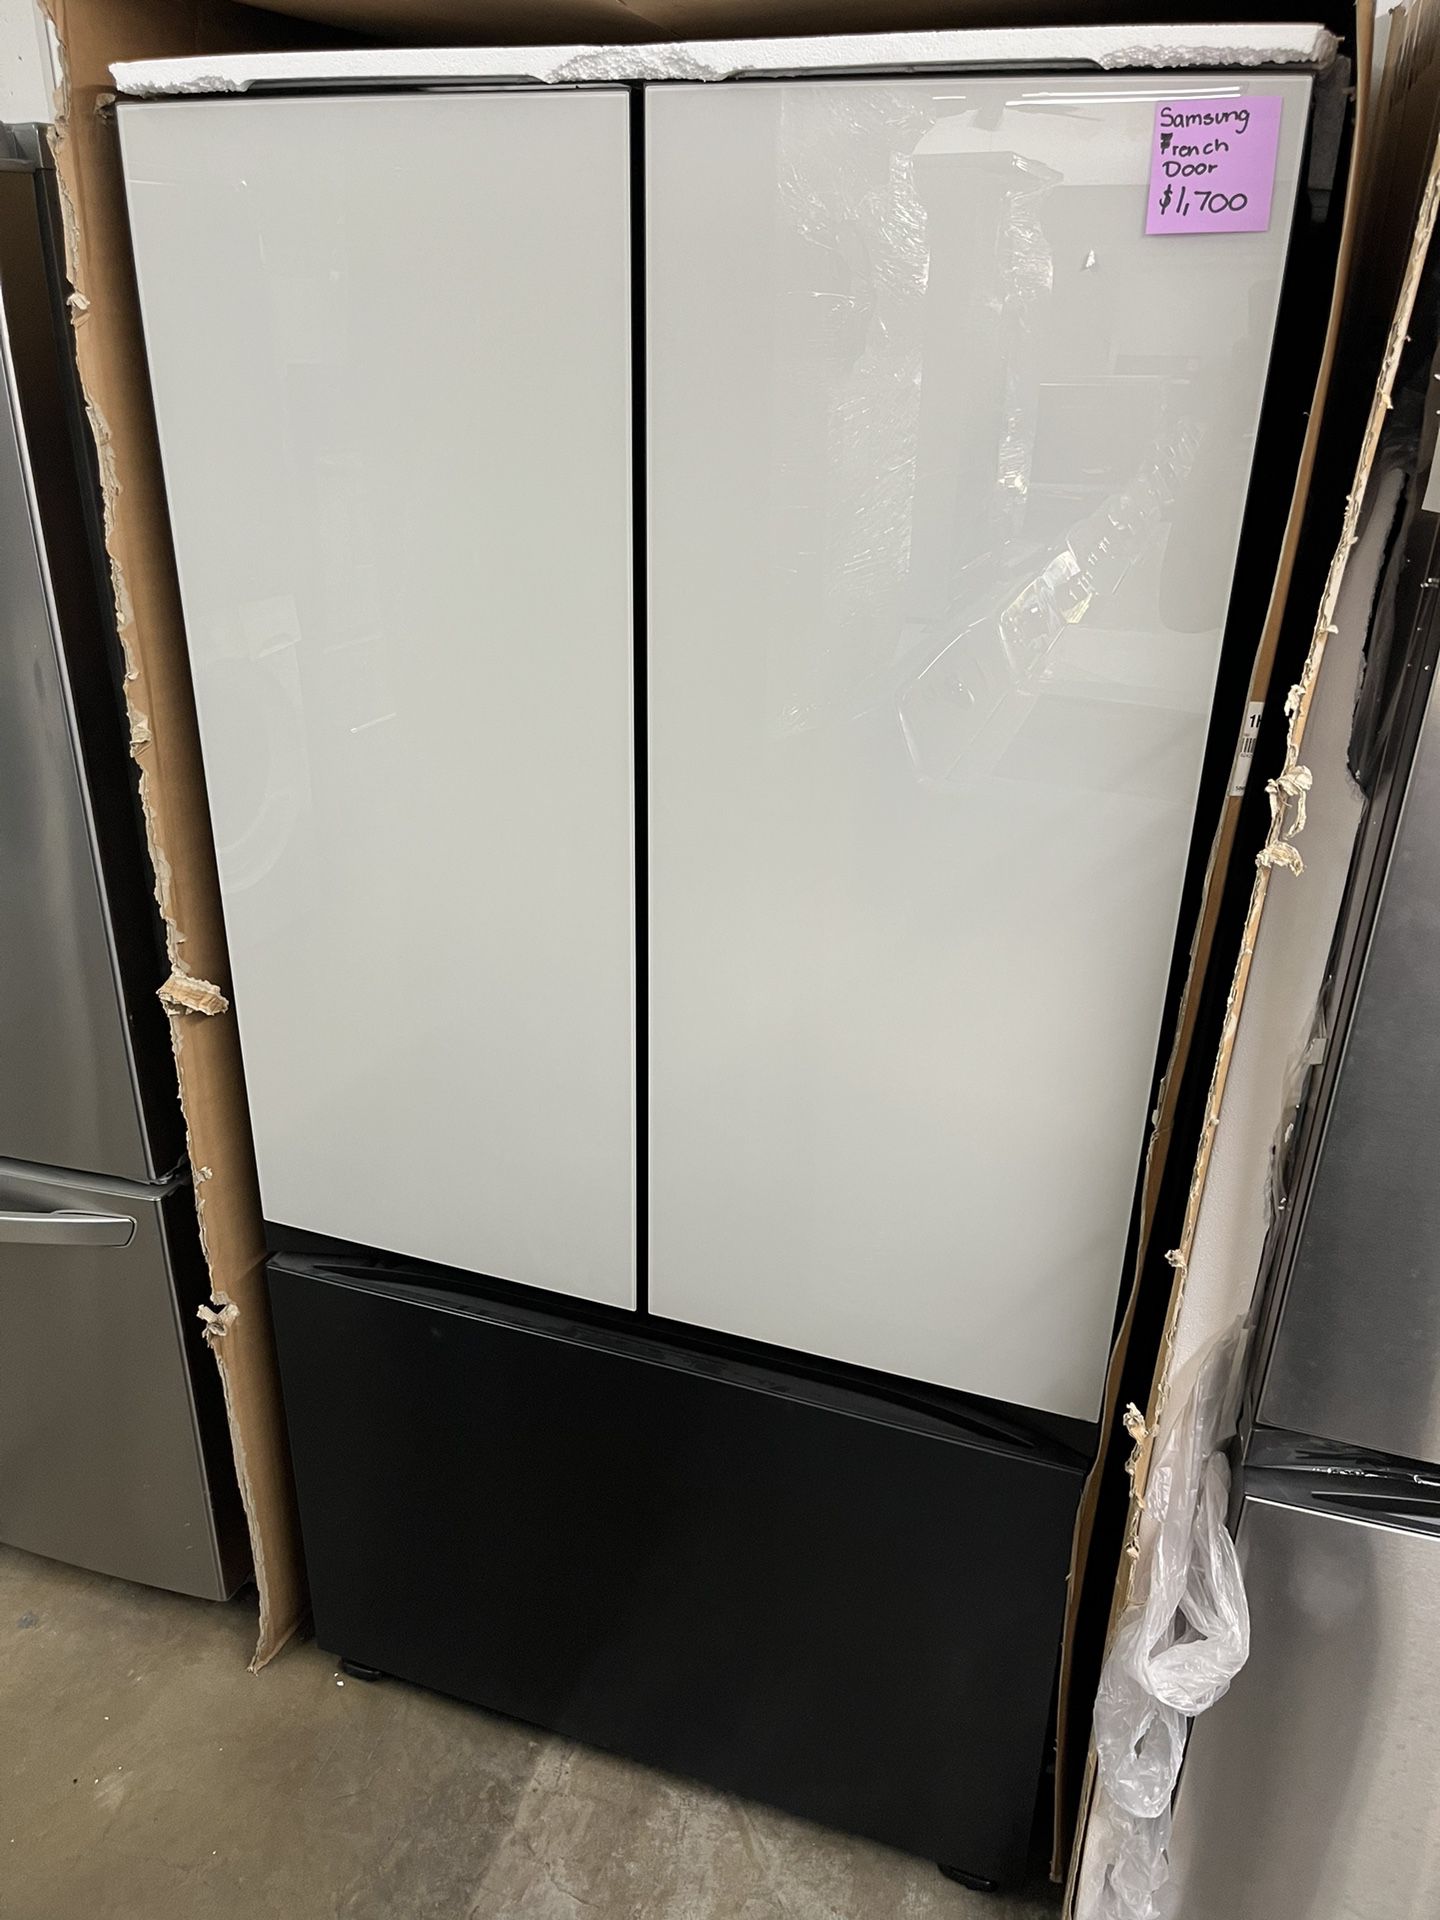 Samsung 3 Door Refrigerator Stainless Steel